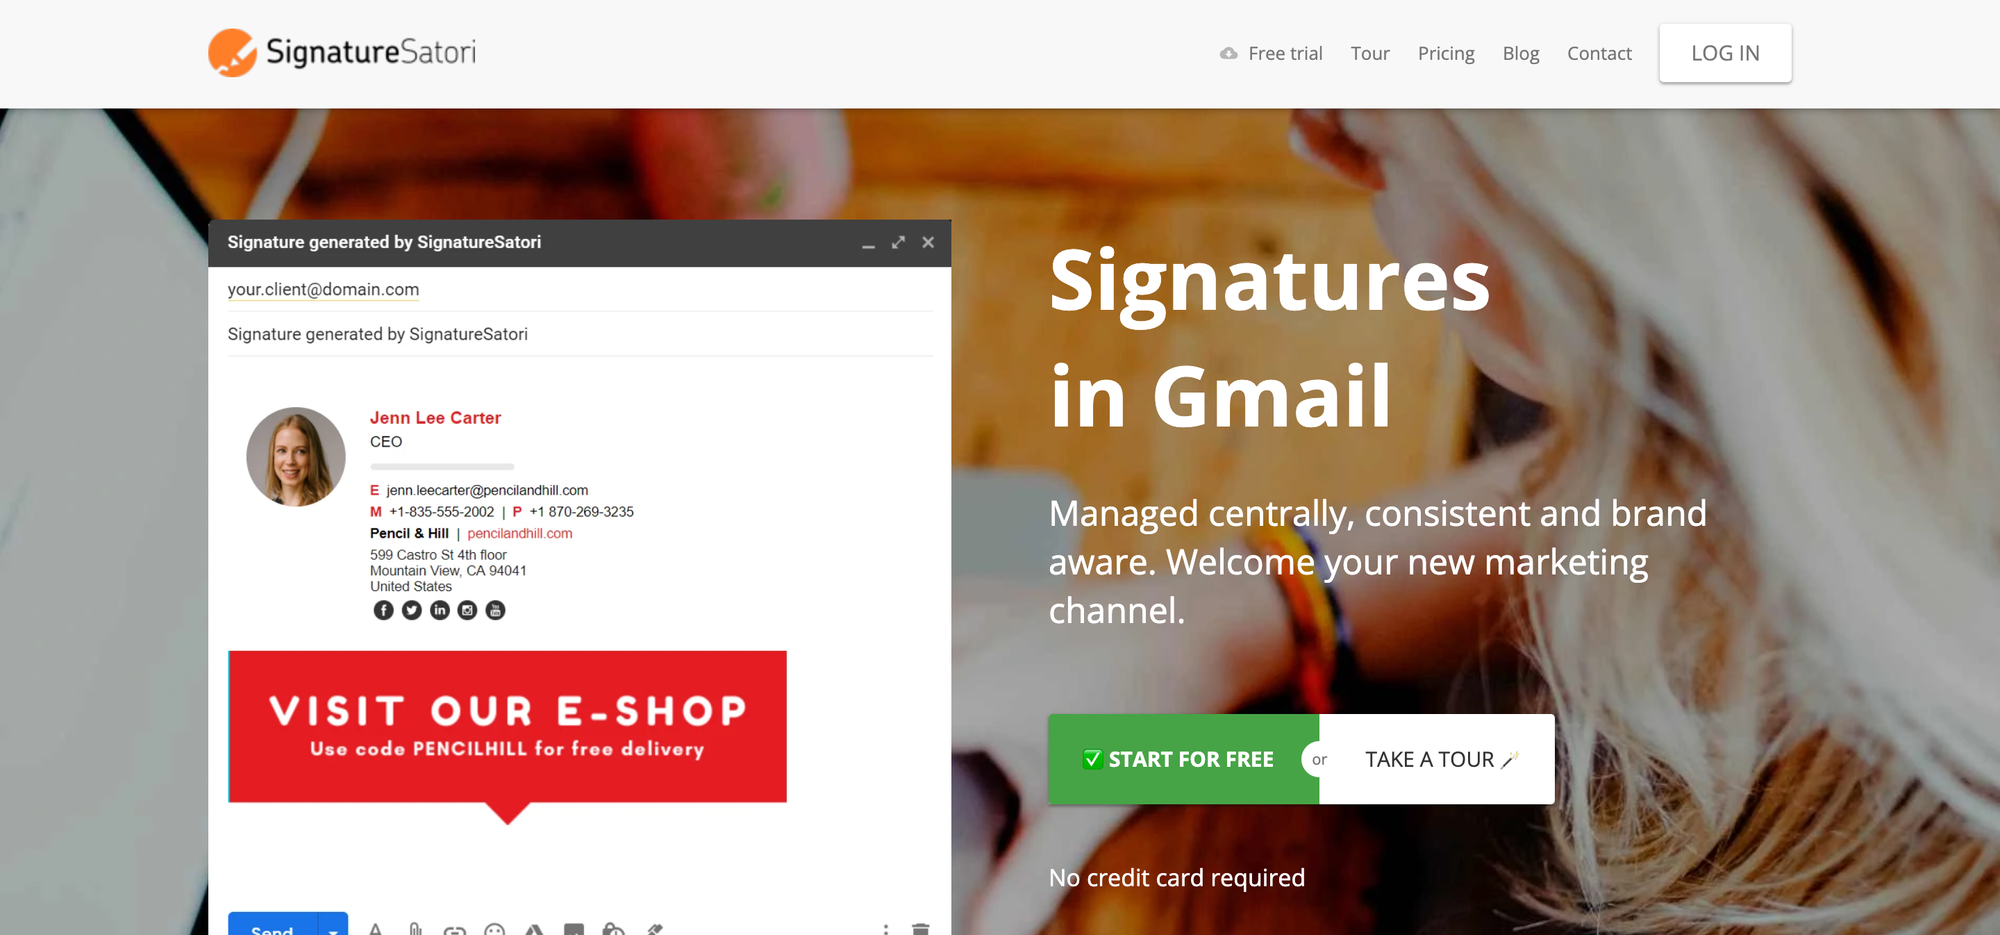 Signature Satori - Email Signature Generator